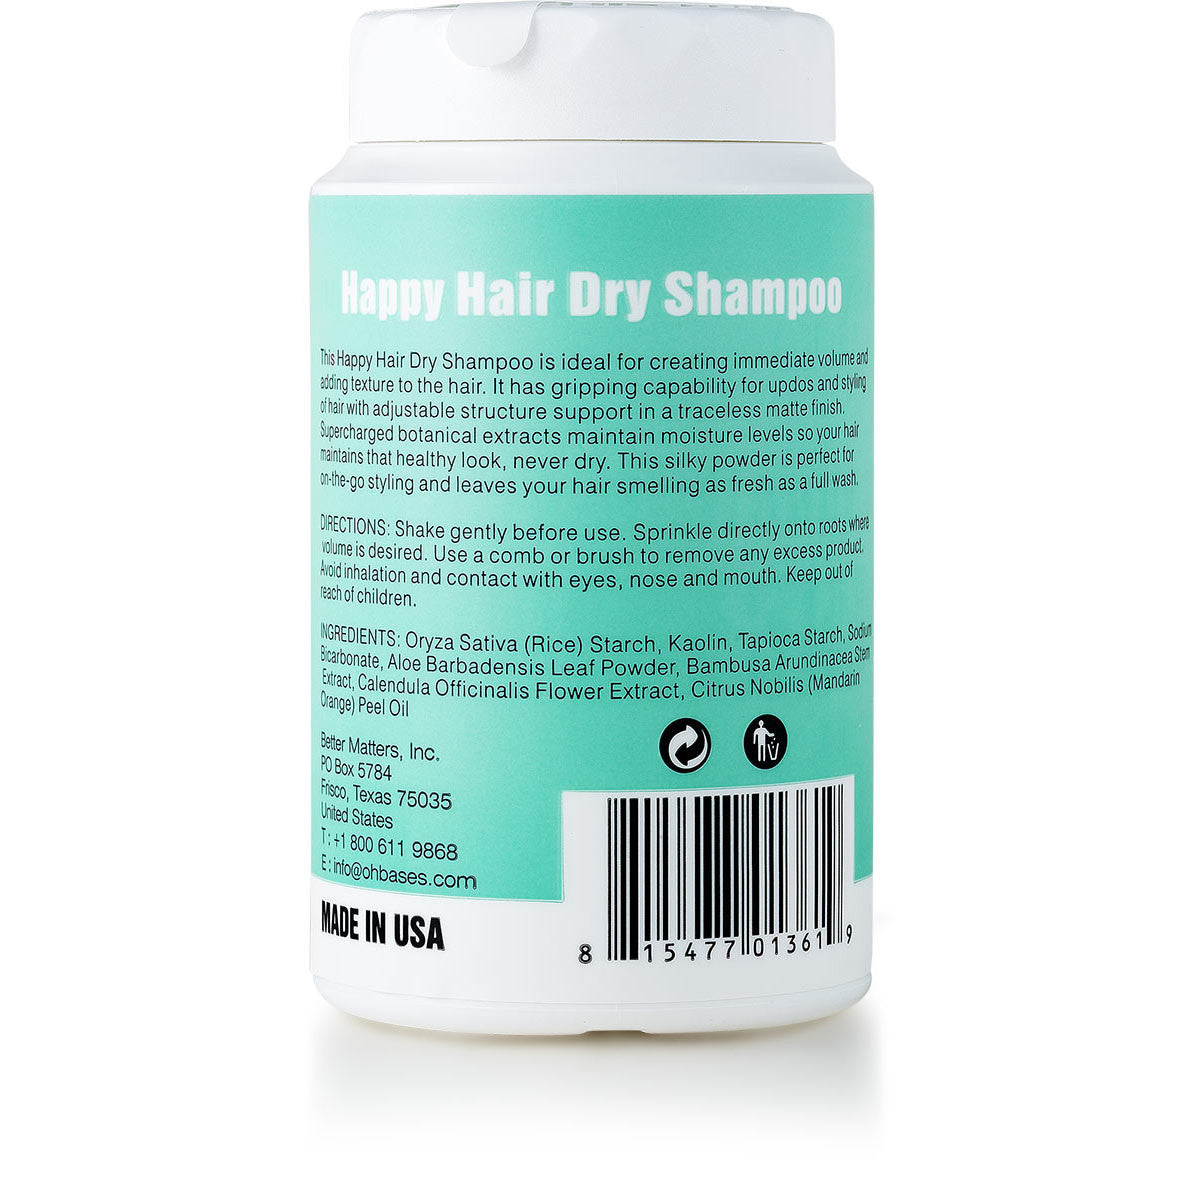 Happy Hair Dry Shampoo - OhBases